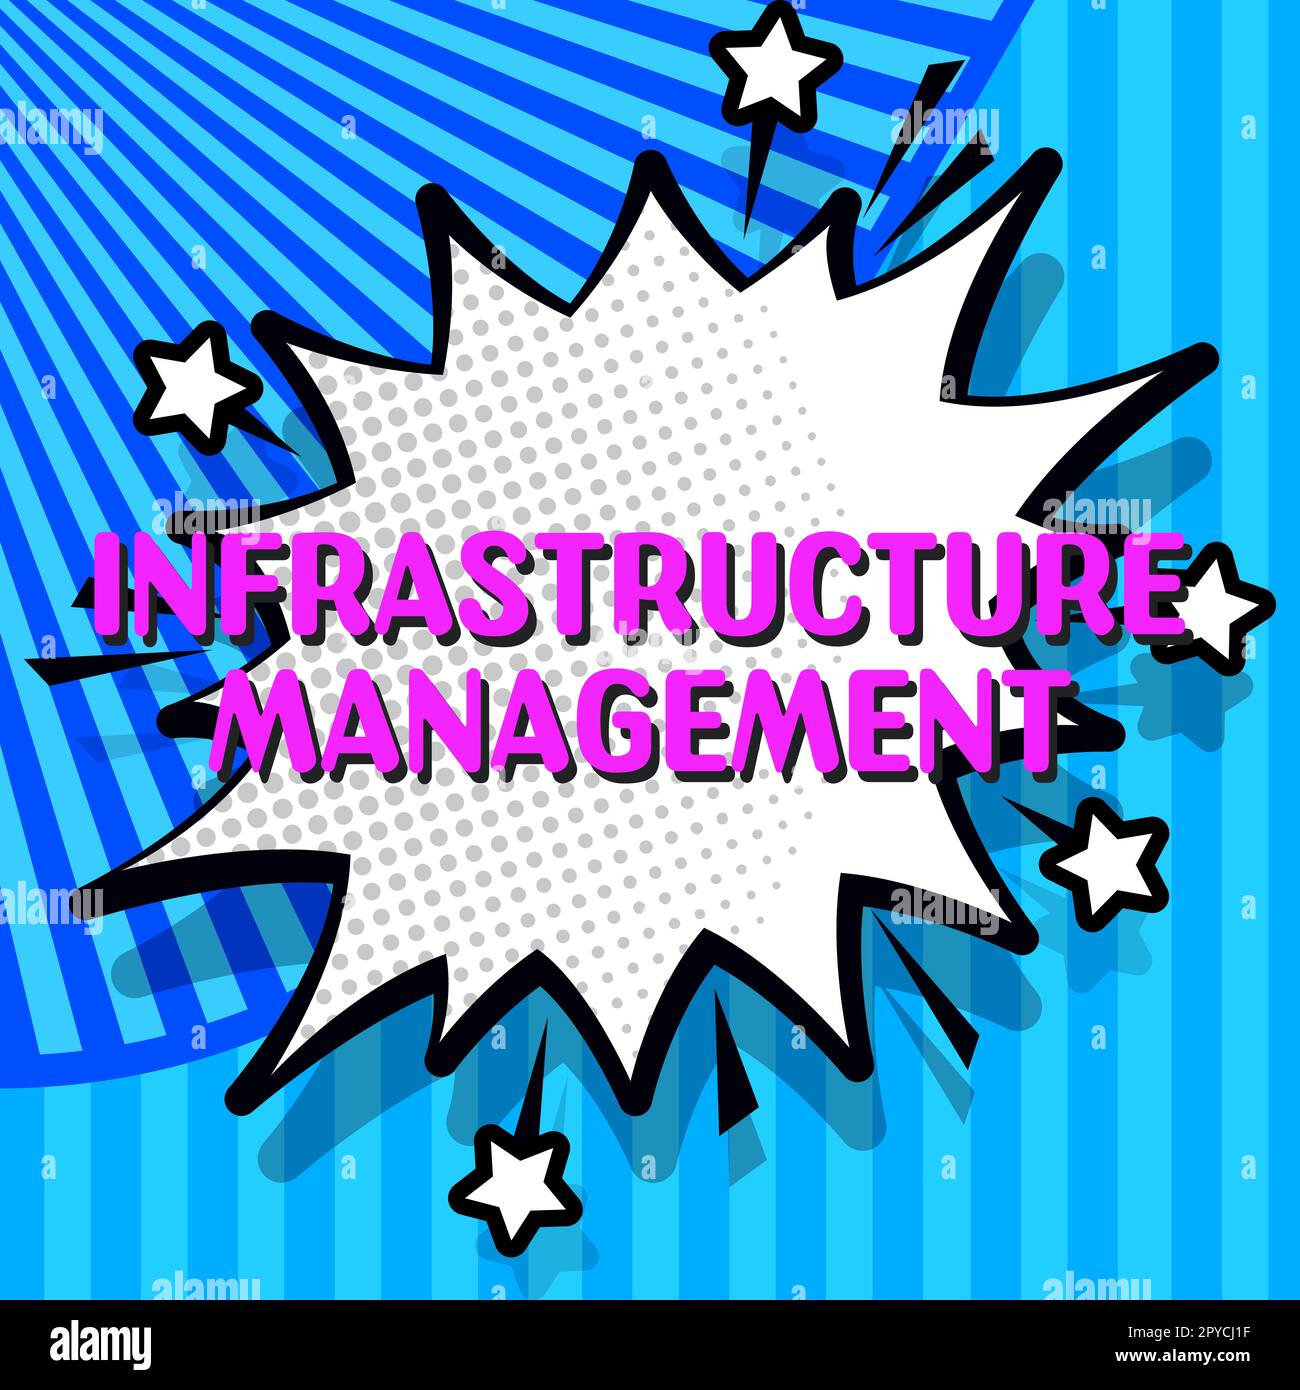 Schild, das Infrastructure Management anzeigt. Konzept bedeutet Minimierung von Ausfallzeiten und Aufrechterhaltung der Unternehmensproduktivität Stockfoto